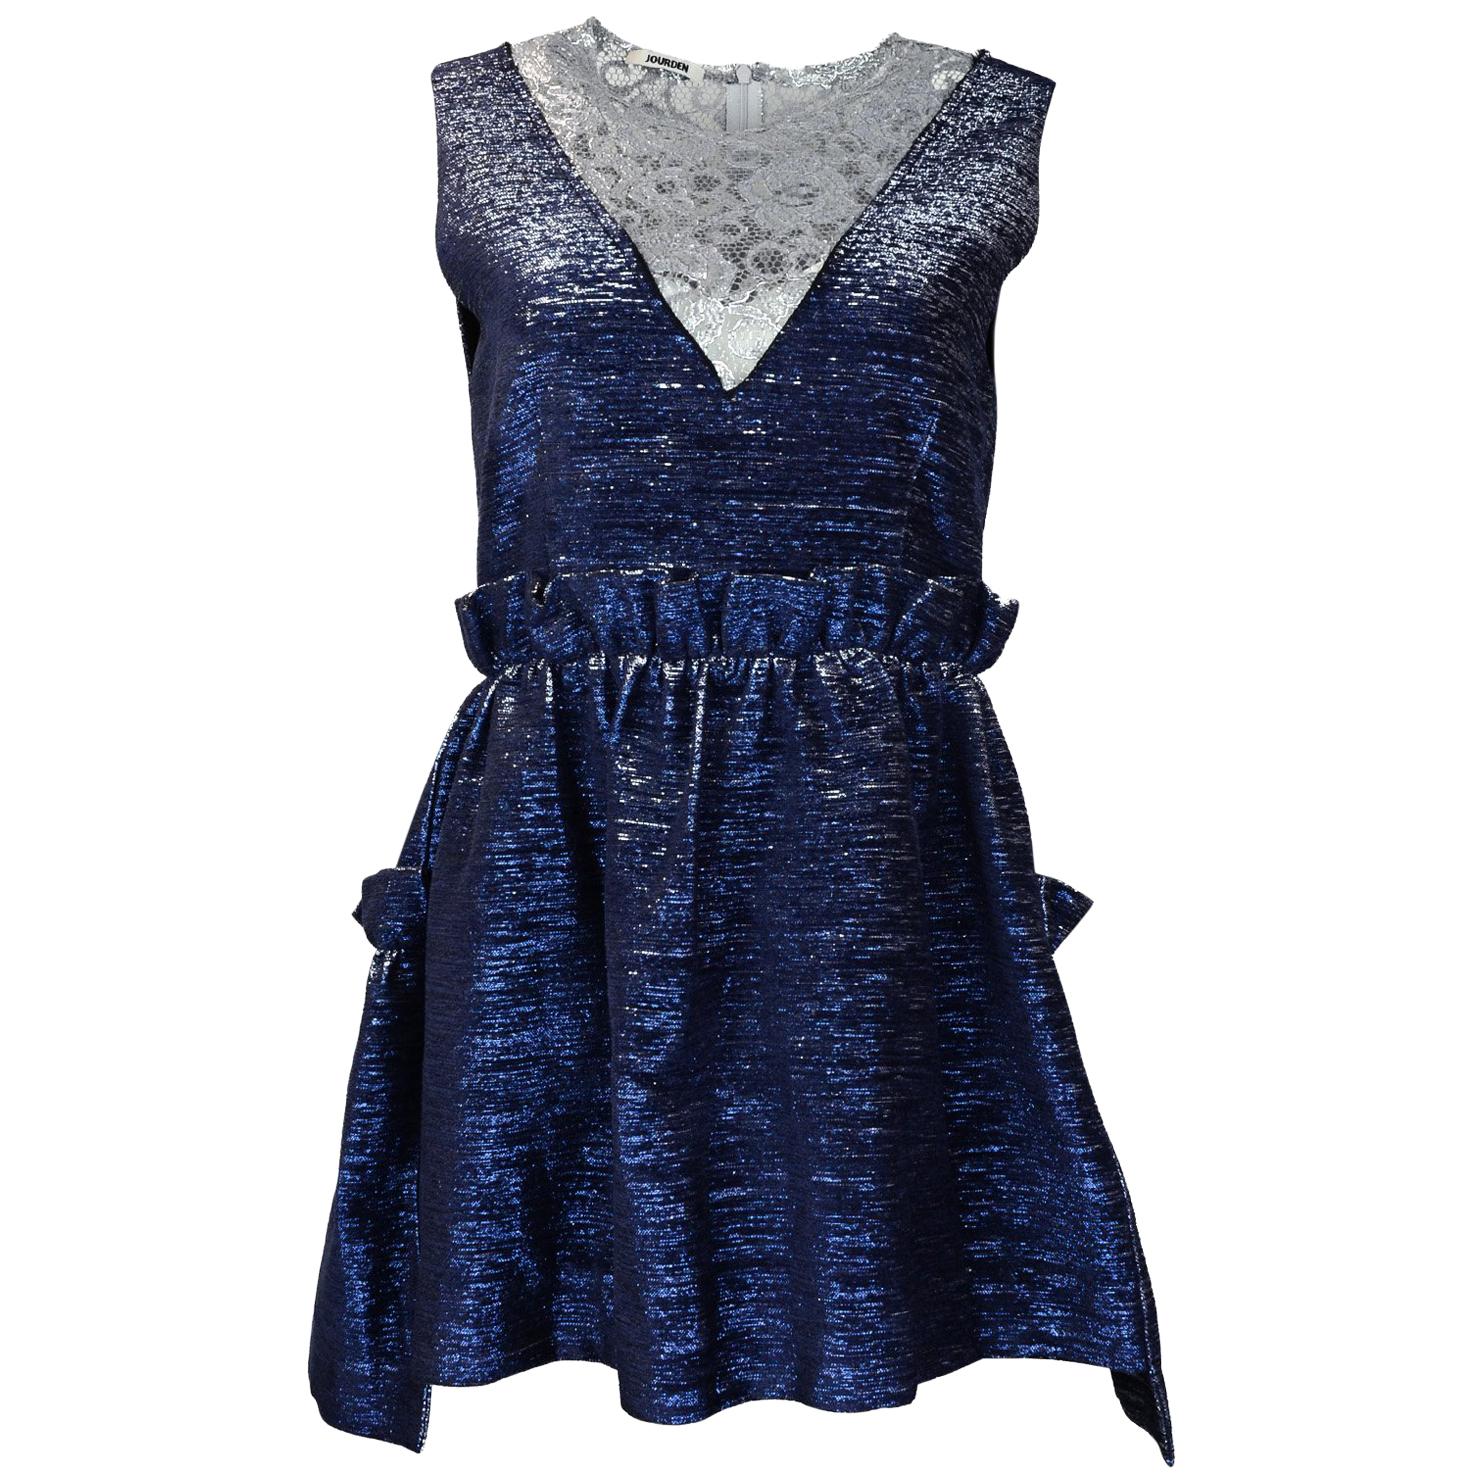 Jourden NWT Blue Metallic Ruffle Dress W/ Silver Lace sz FR42/ US10